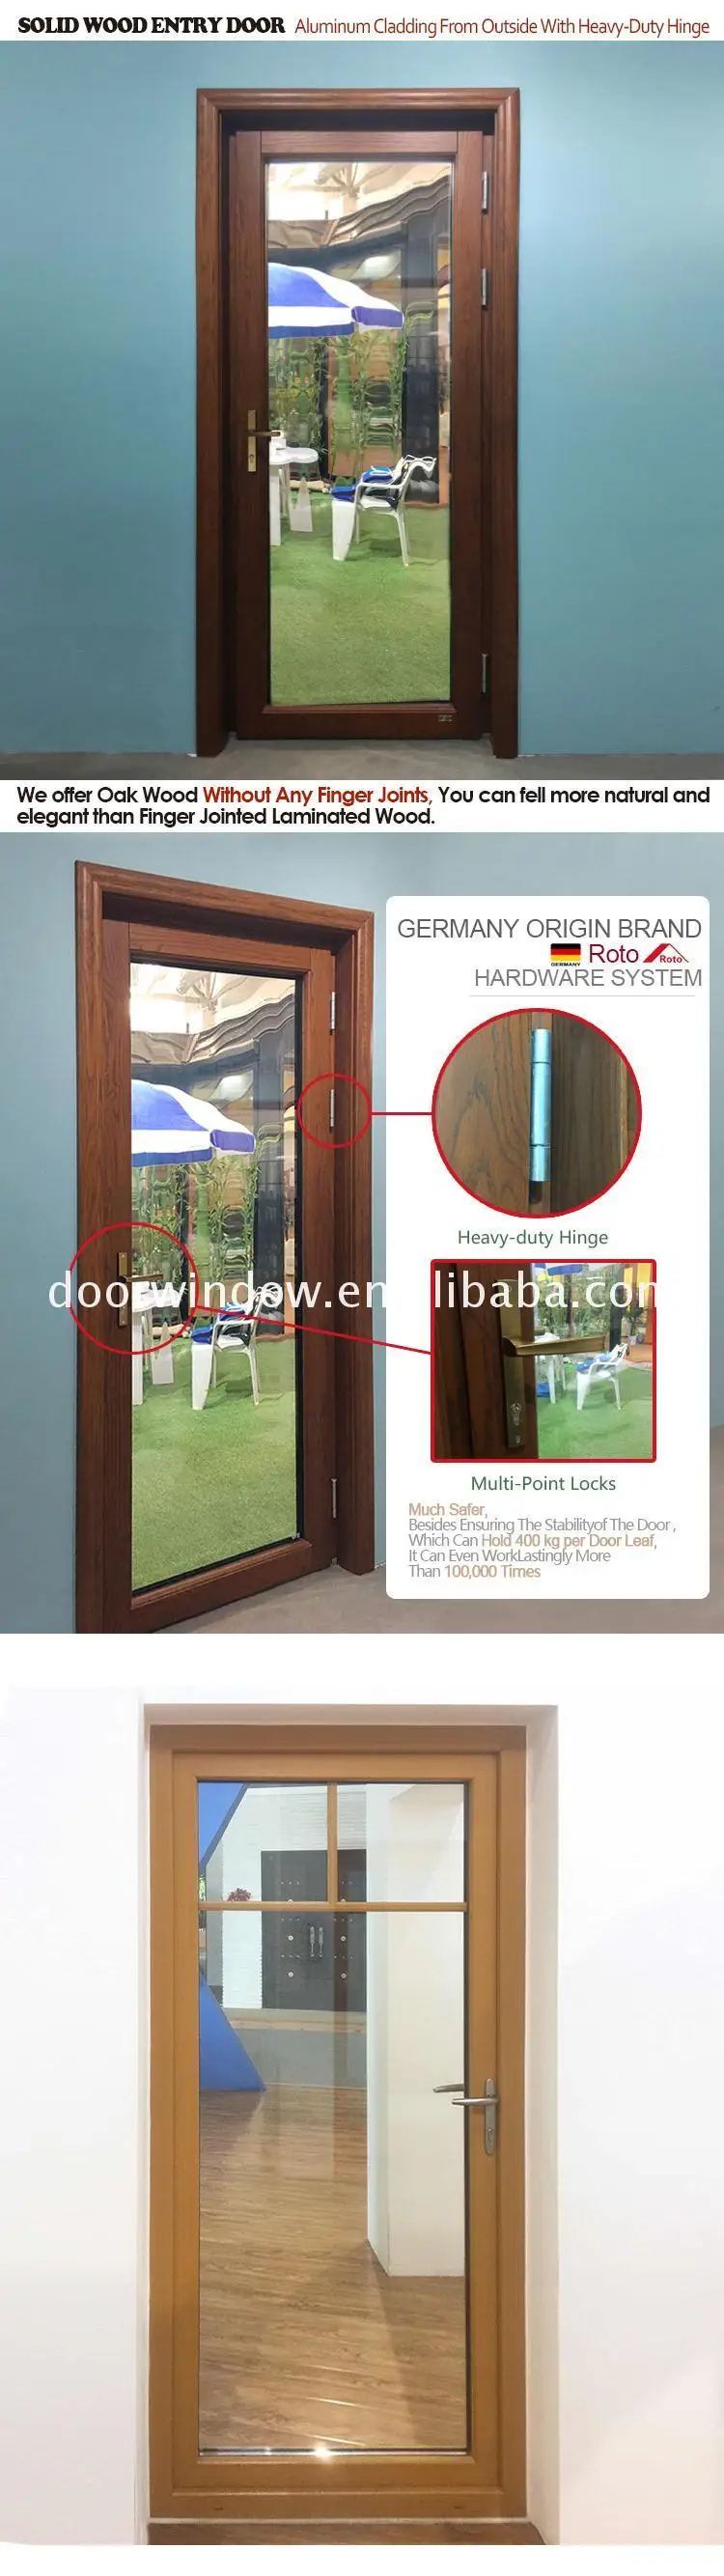 Factory Directly Supply depot & home doorwin doors brown aluminium bronze